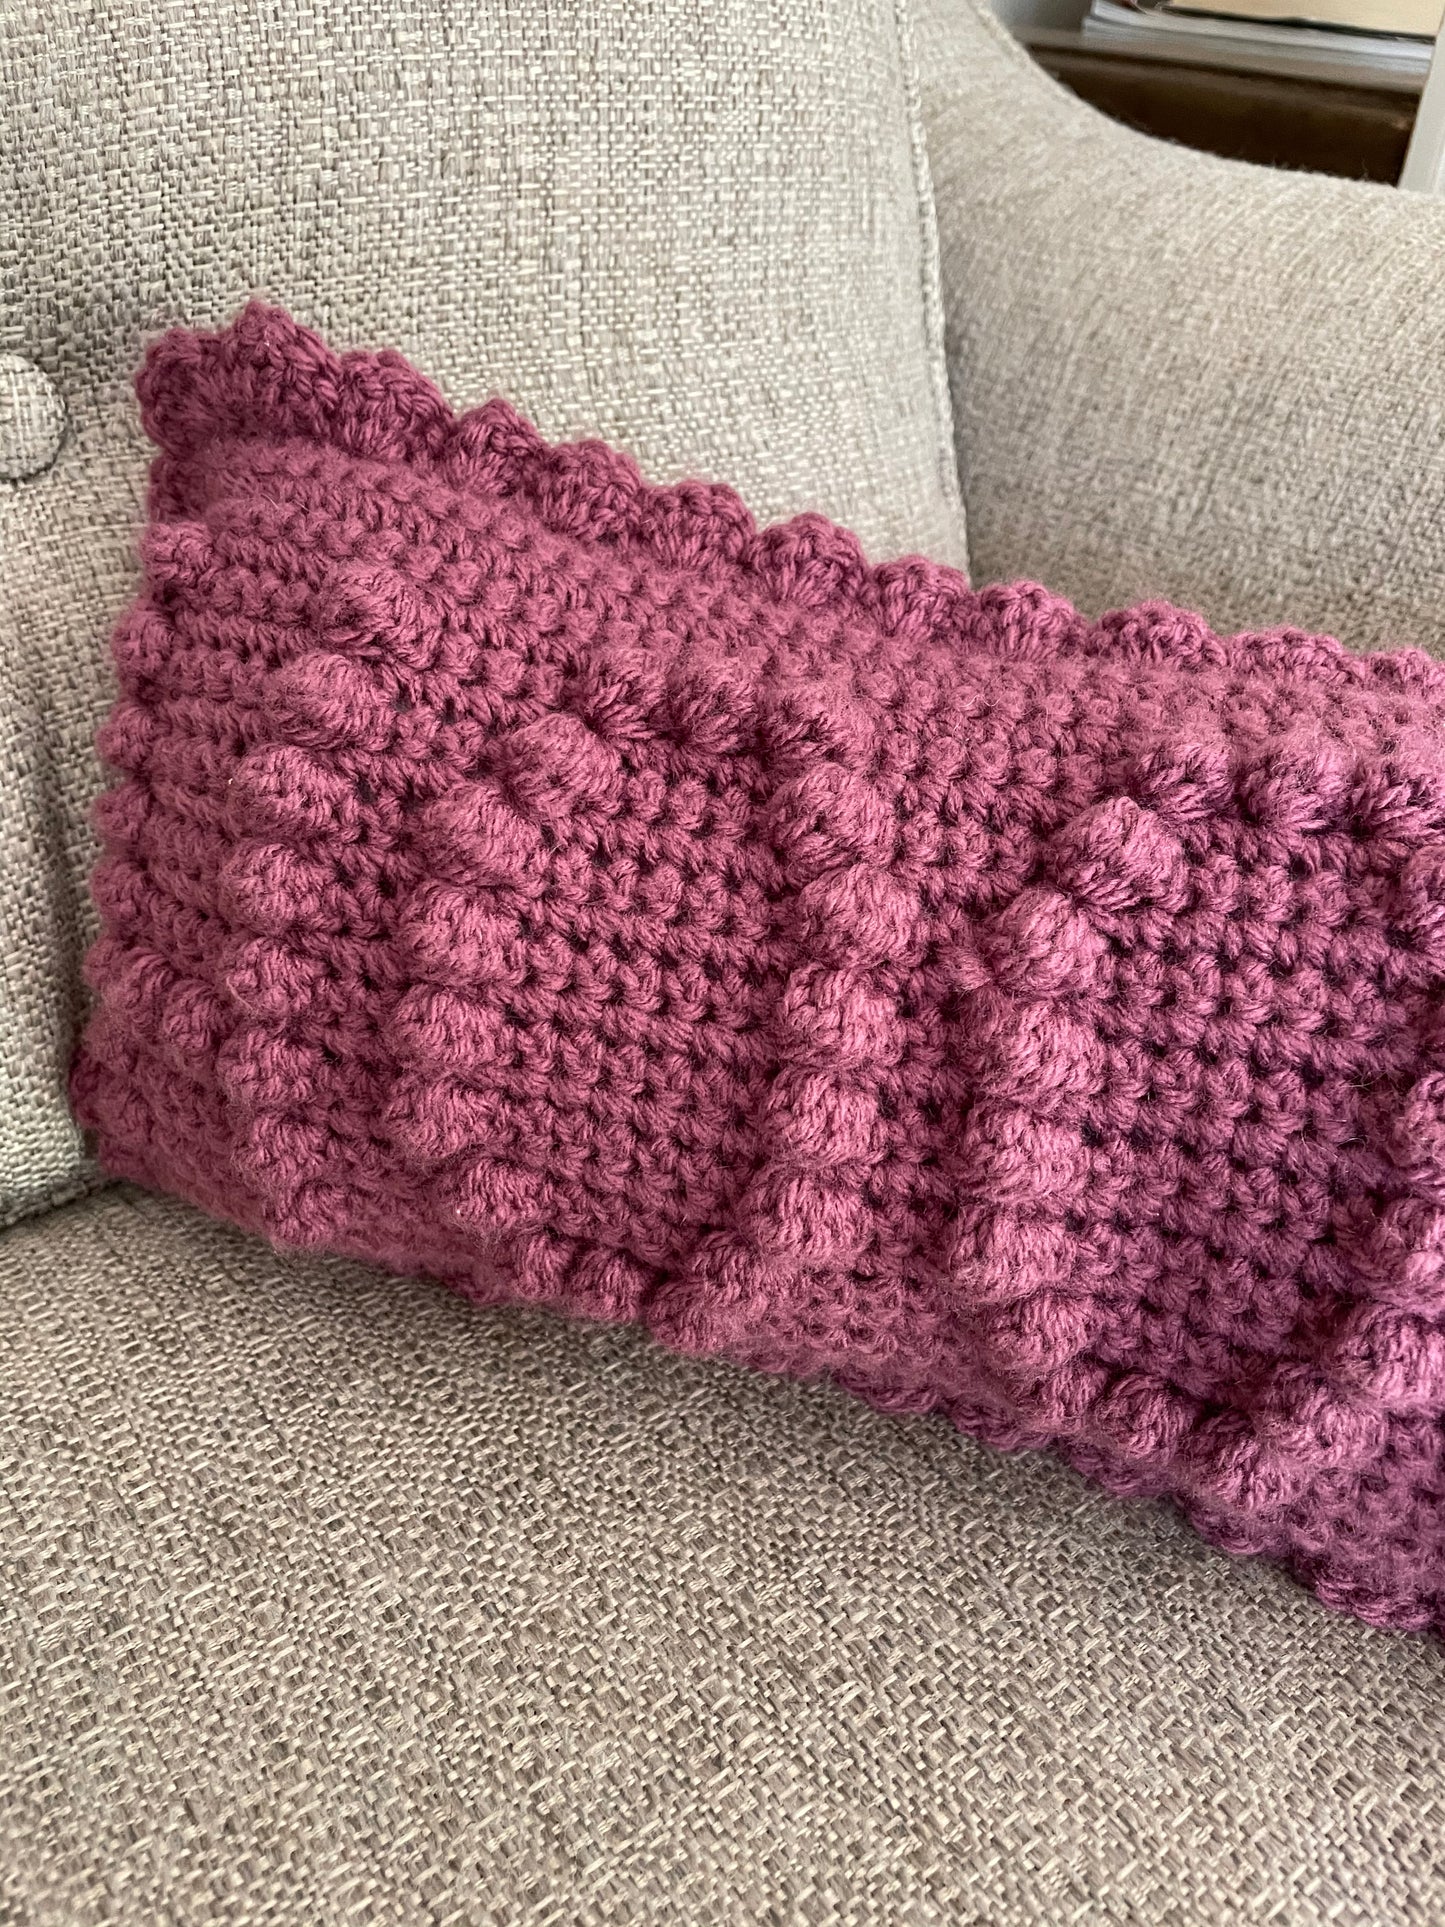 Hooker Crochet Pillow Pattern